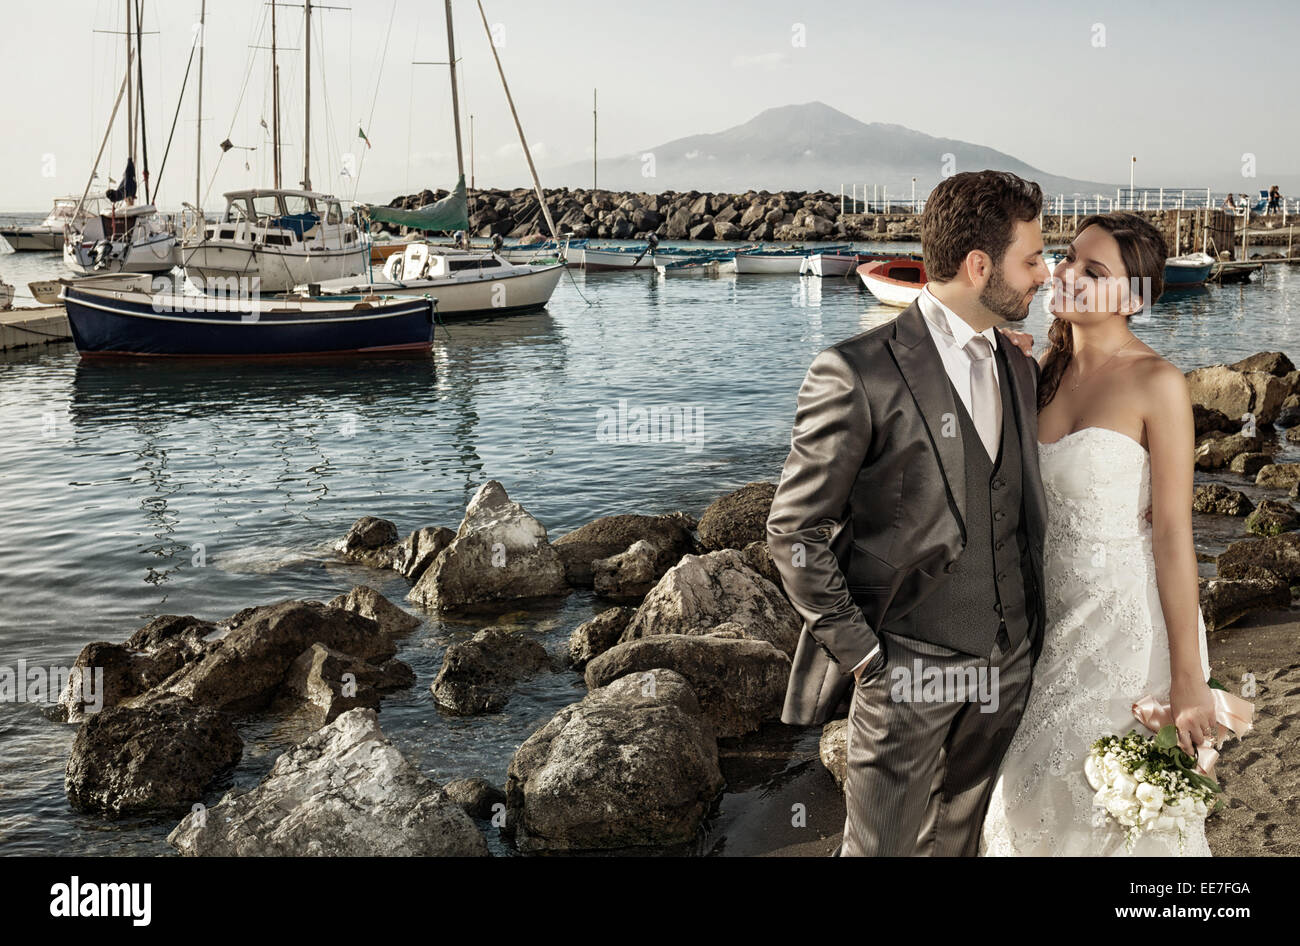 Coppia sposata nel giorno del loro matrimonio vicino al mare. Foto Stock